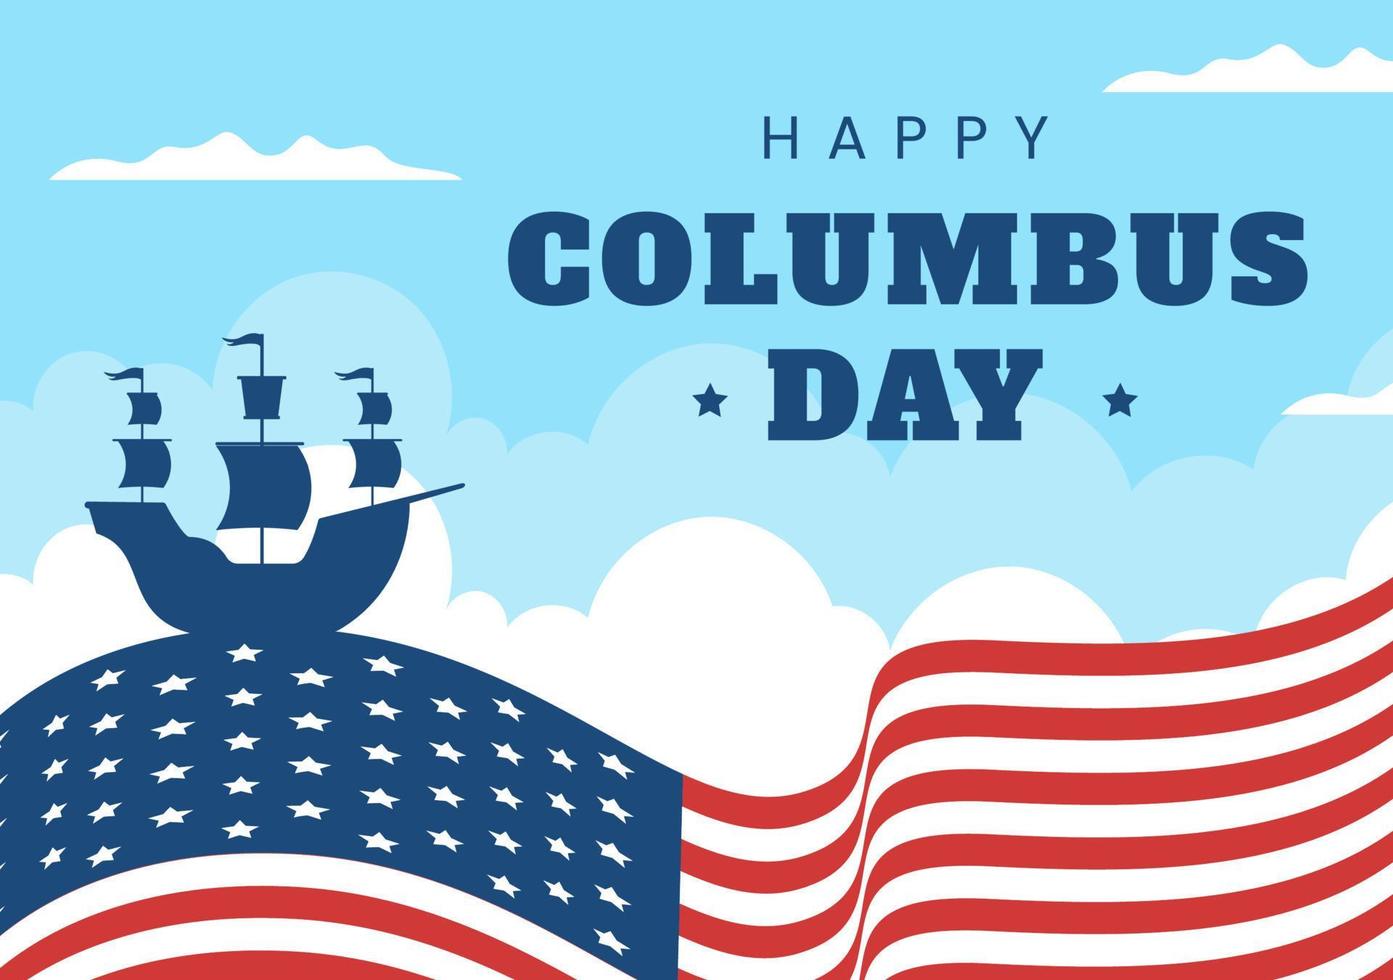 happy columbus day nationalfeiertag handgezeichnete karikaturillustration mit blauen wellen, kompass, schiff und usa-flaggen im flachen hintergrund vektor